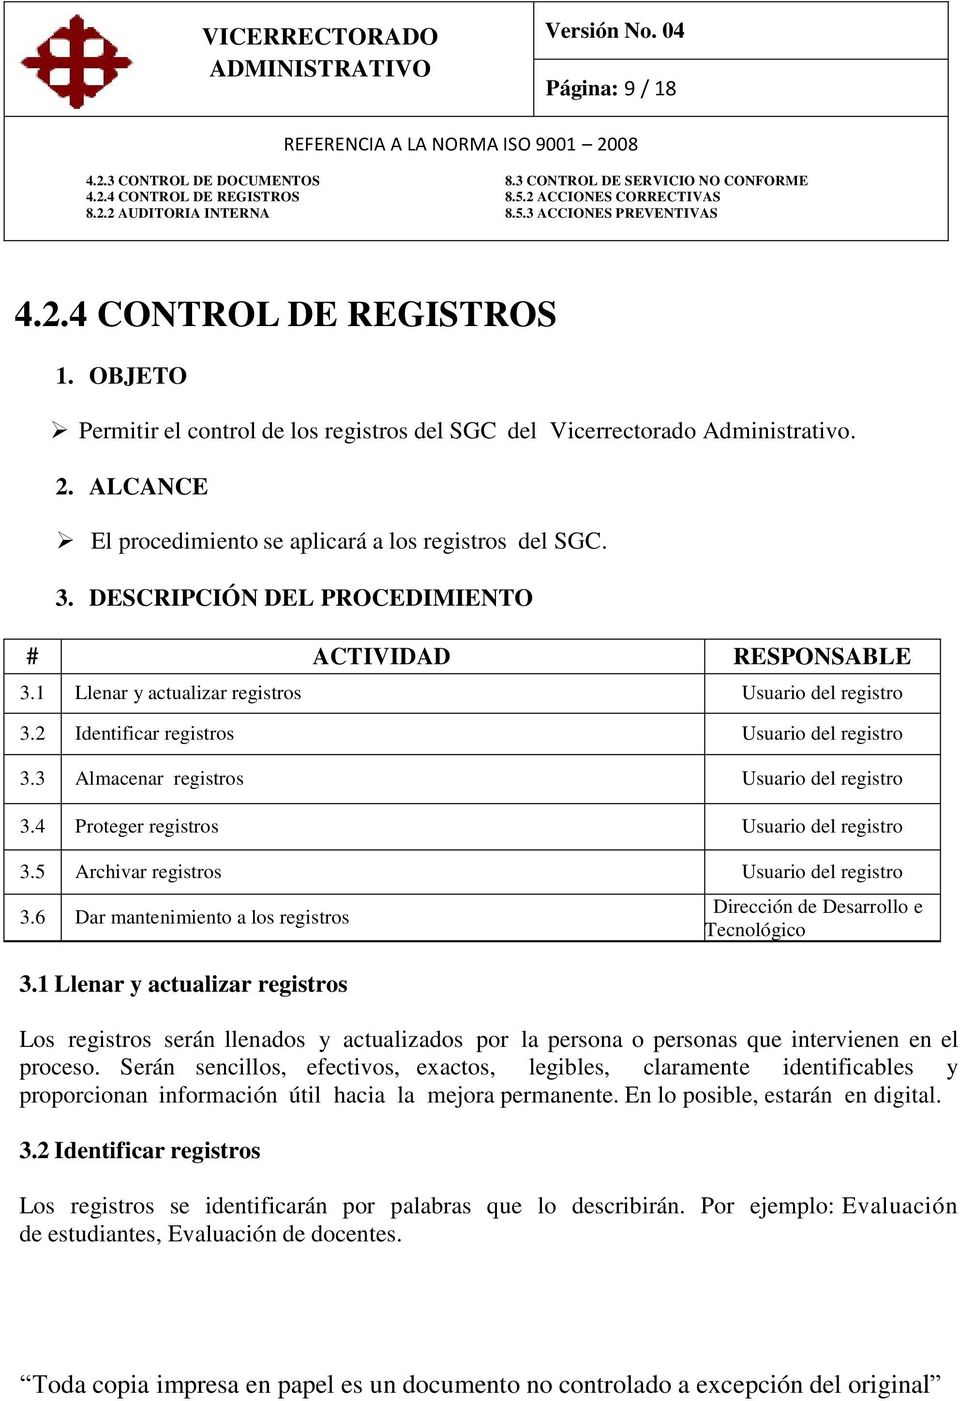 3 Almacenar registros Usuario del registro 3.4 Proteger registros Usuario del registro 3.5 Archivar registros Usuario del registro 3.6 Dar mantenimiento a los registros 3.